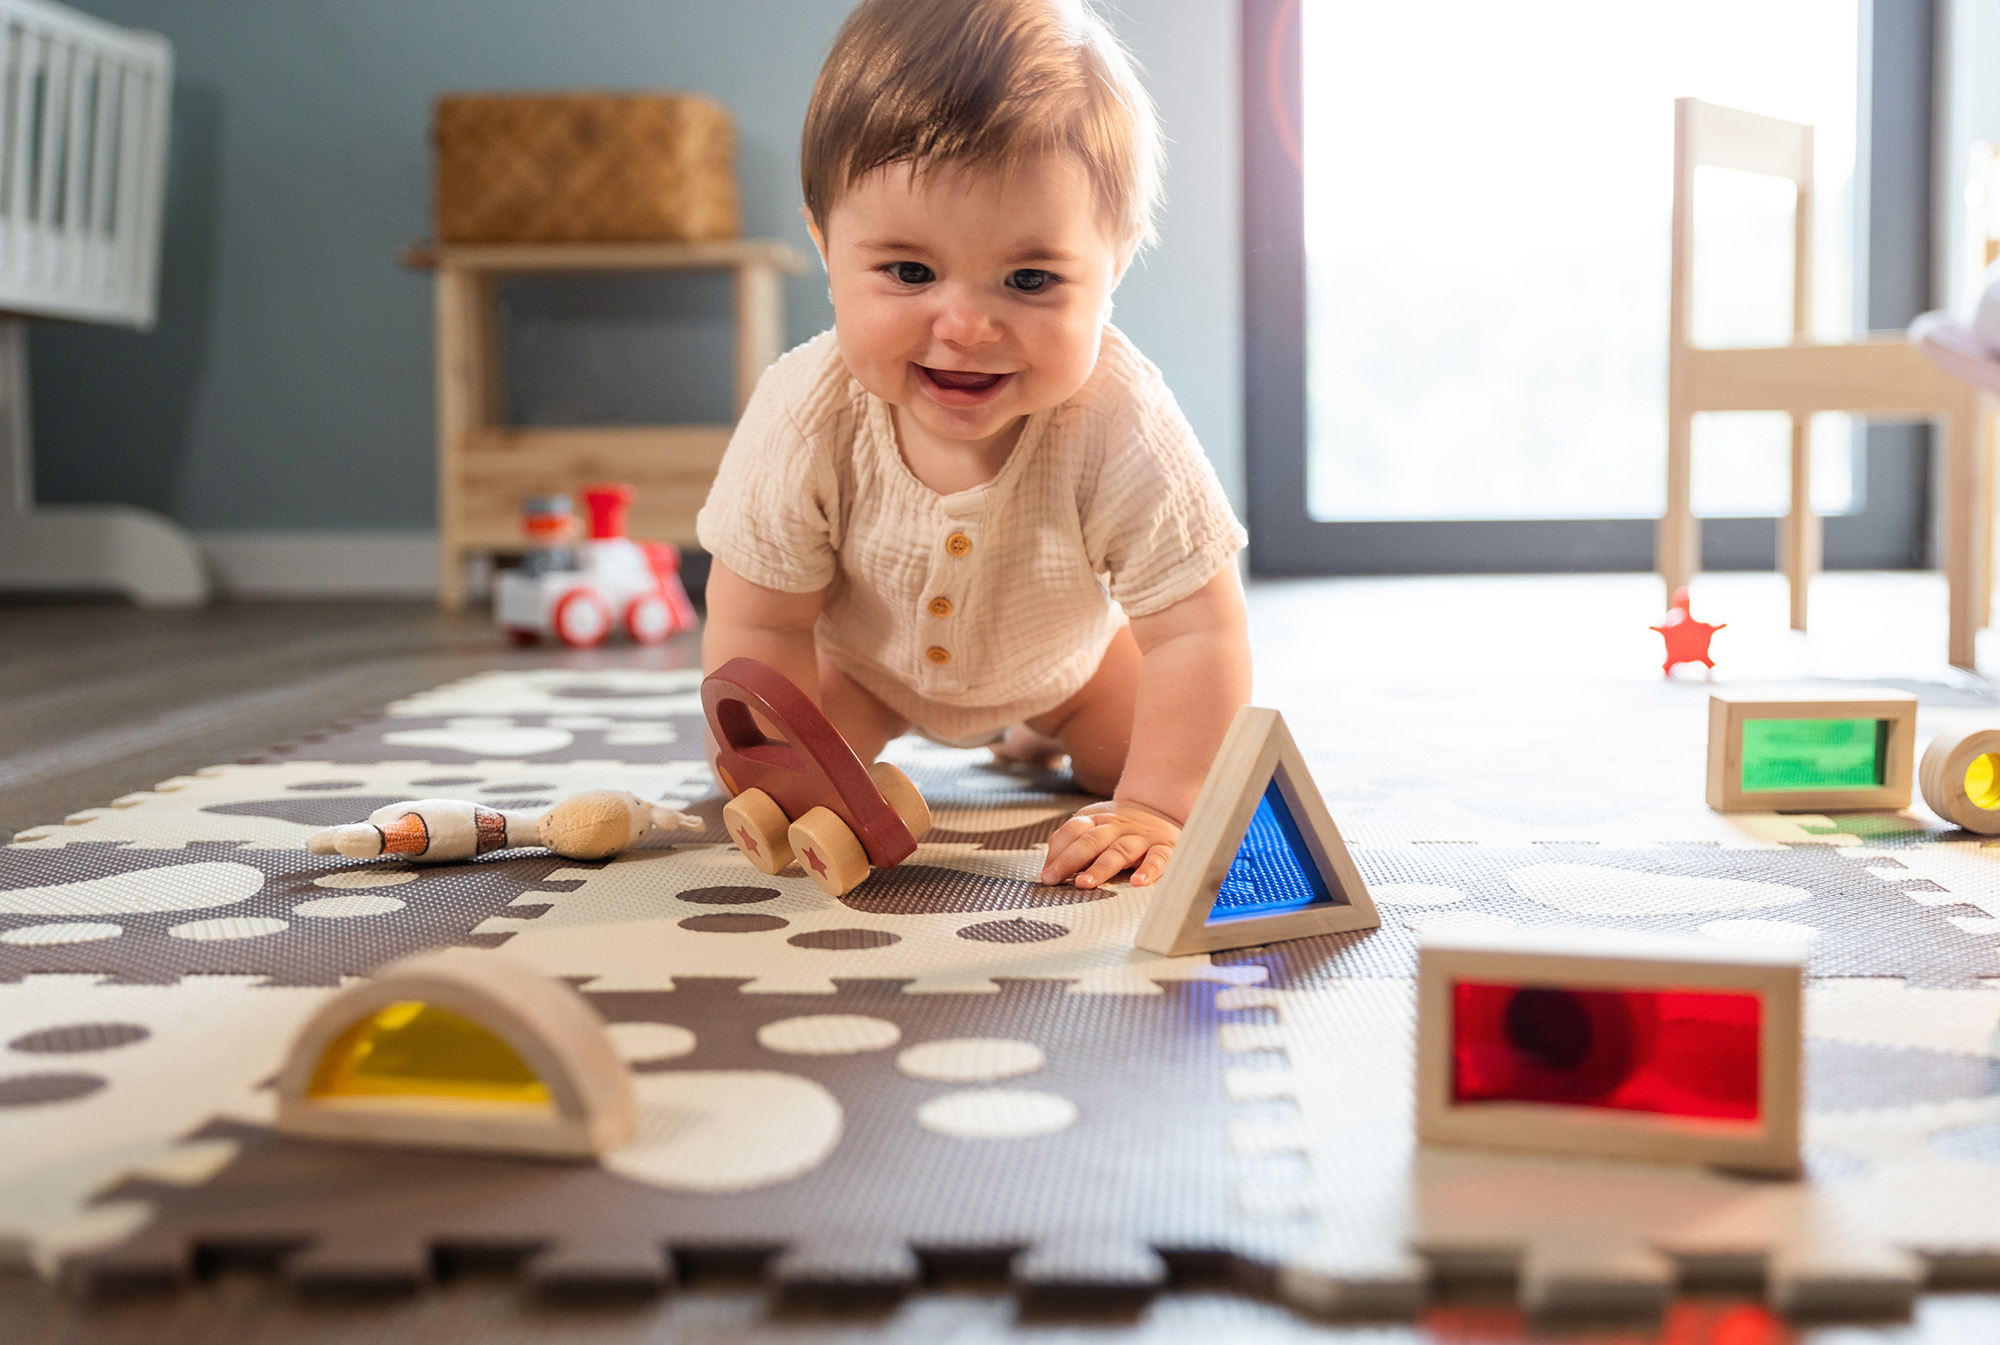 Infant Development Coaching Icon - Baby crawling amongst toys